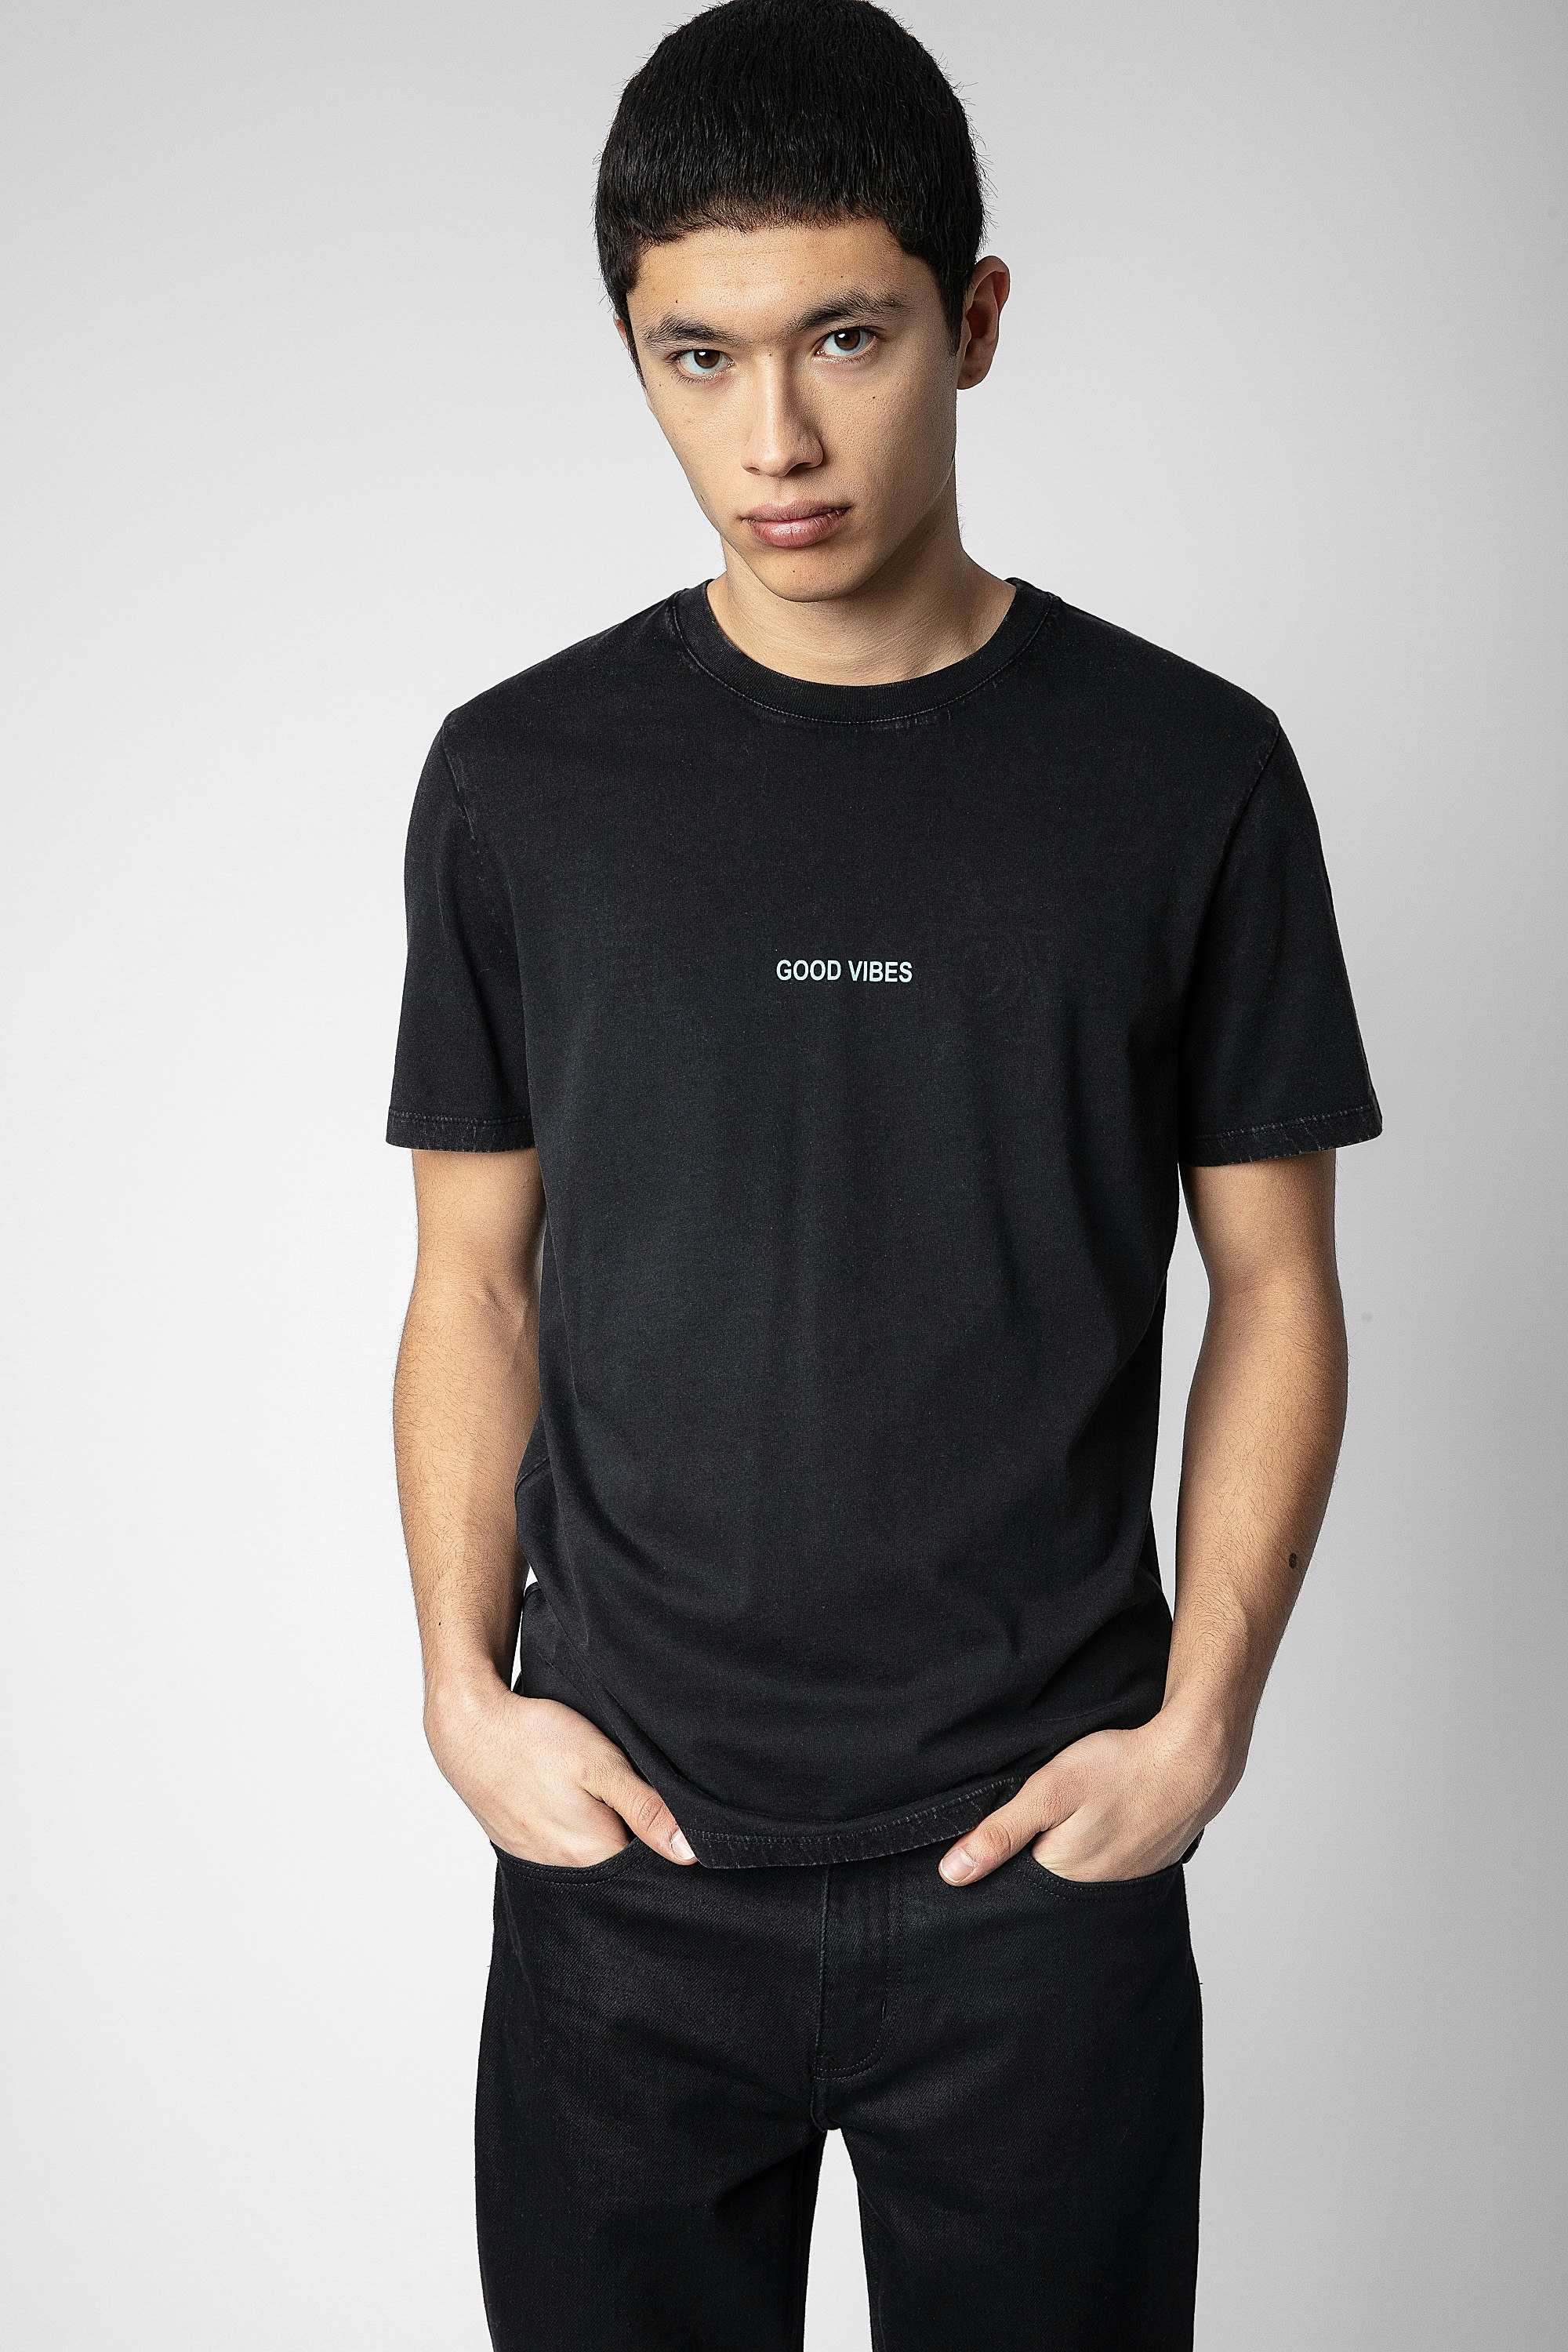 T-shirt Ted - T-shirt in cotone nero con scritta "Good Vibes" sul davanti, motivi ali e Happy face Zadig sul retro - Uomo